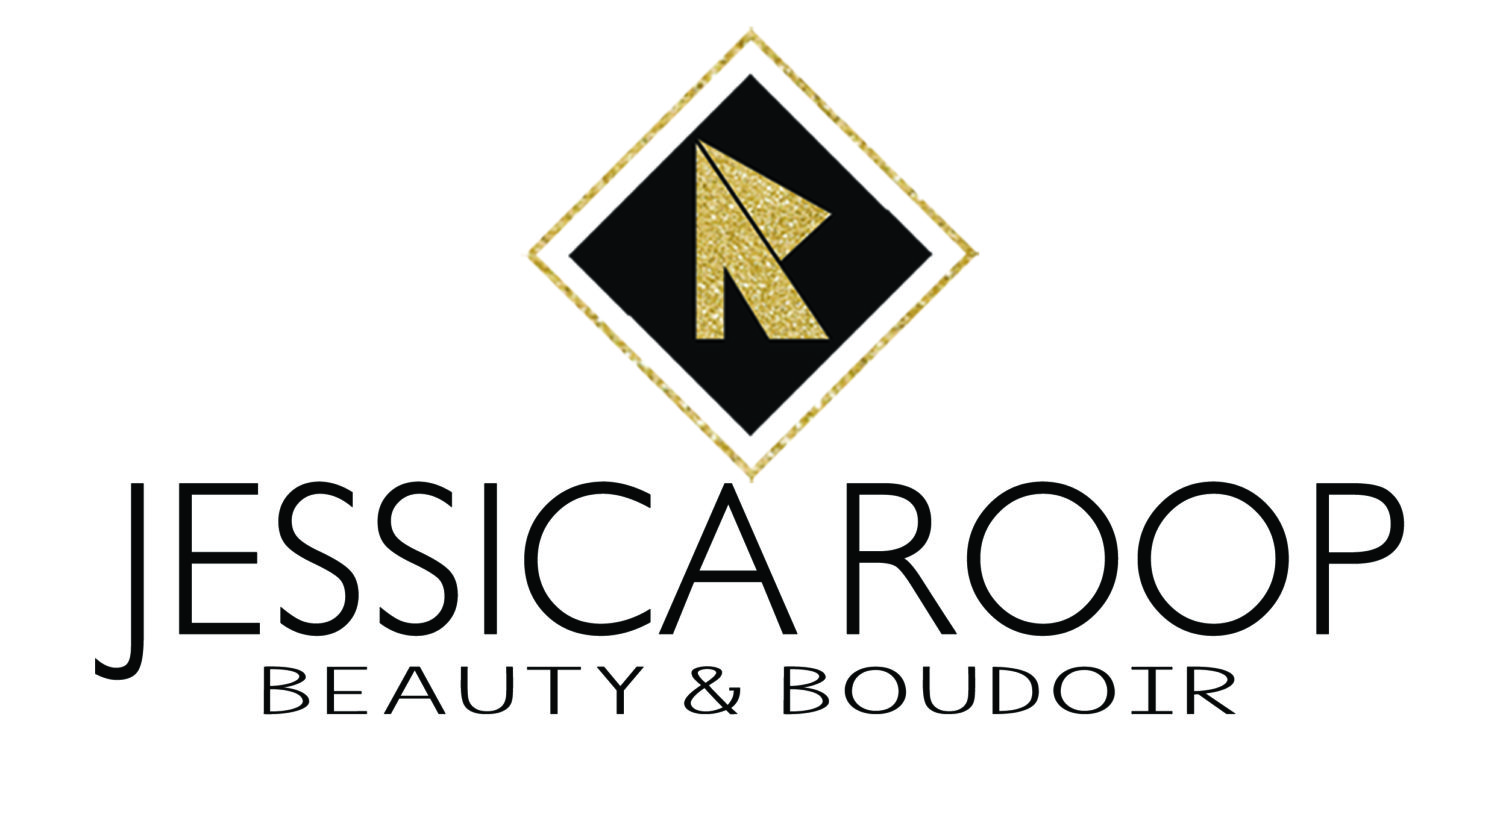 Jessica Roop Beauty & Boudoir